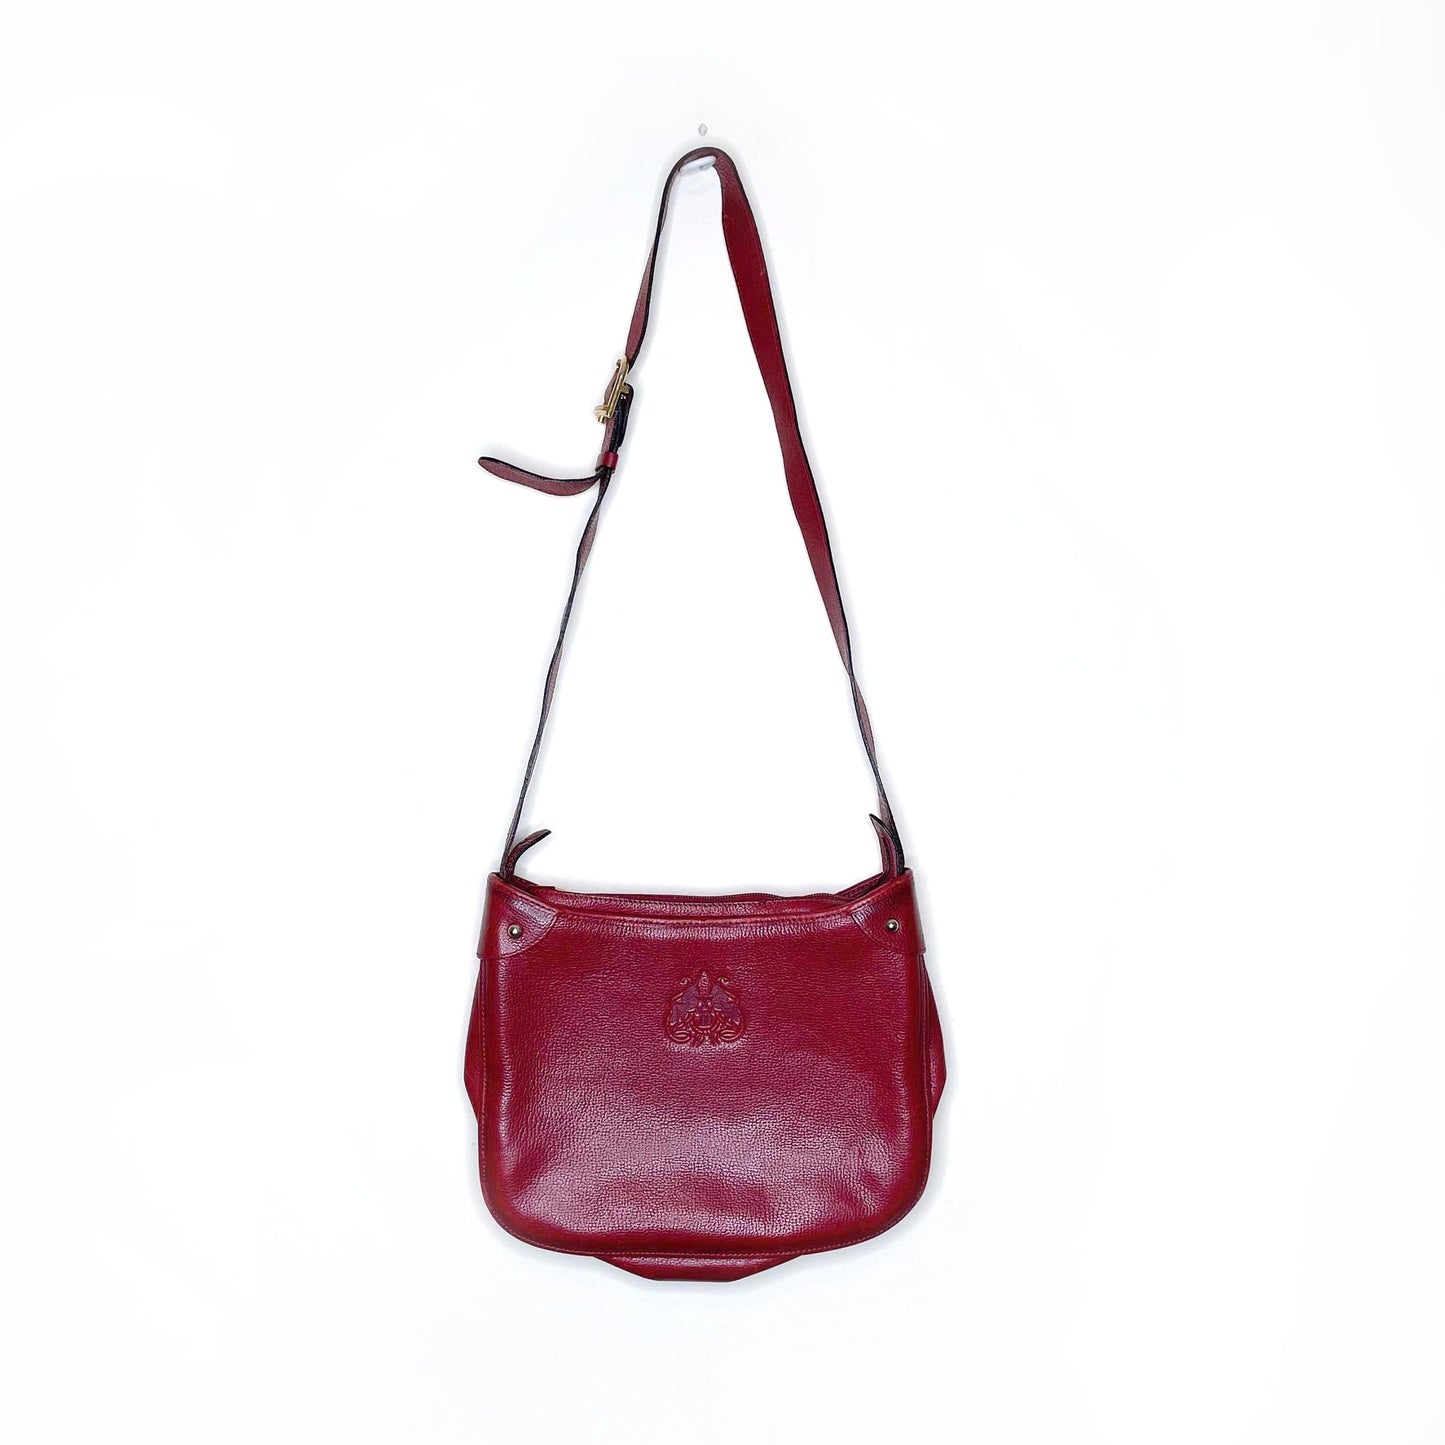 vintage didier lamarthe red leather deboss emblem handbag